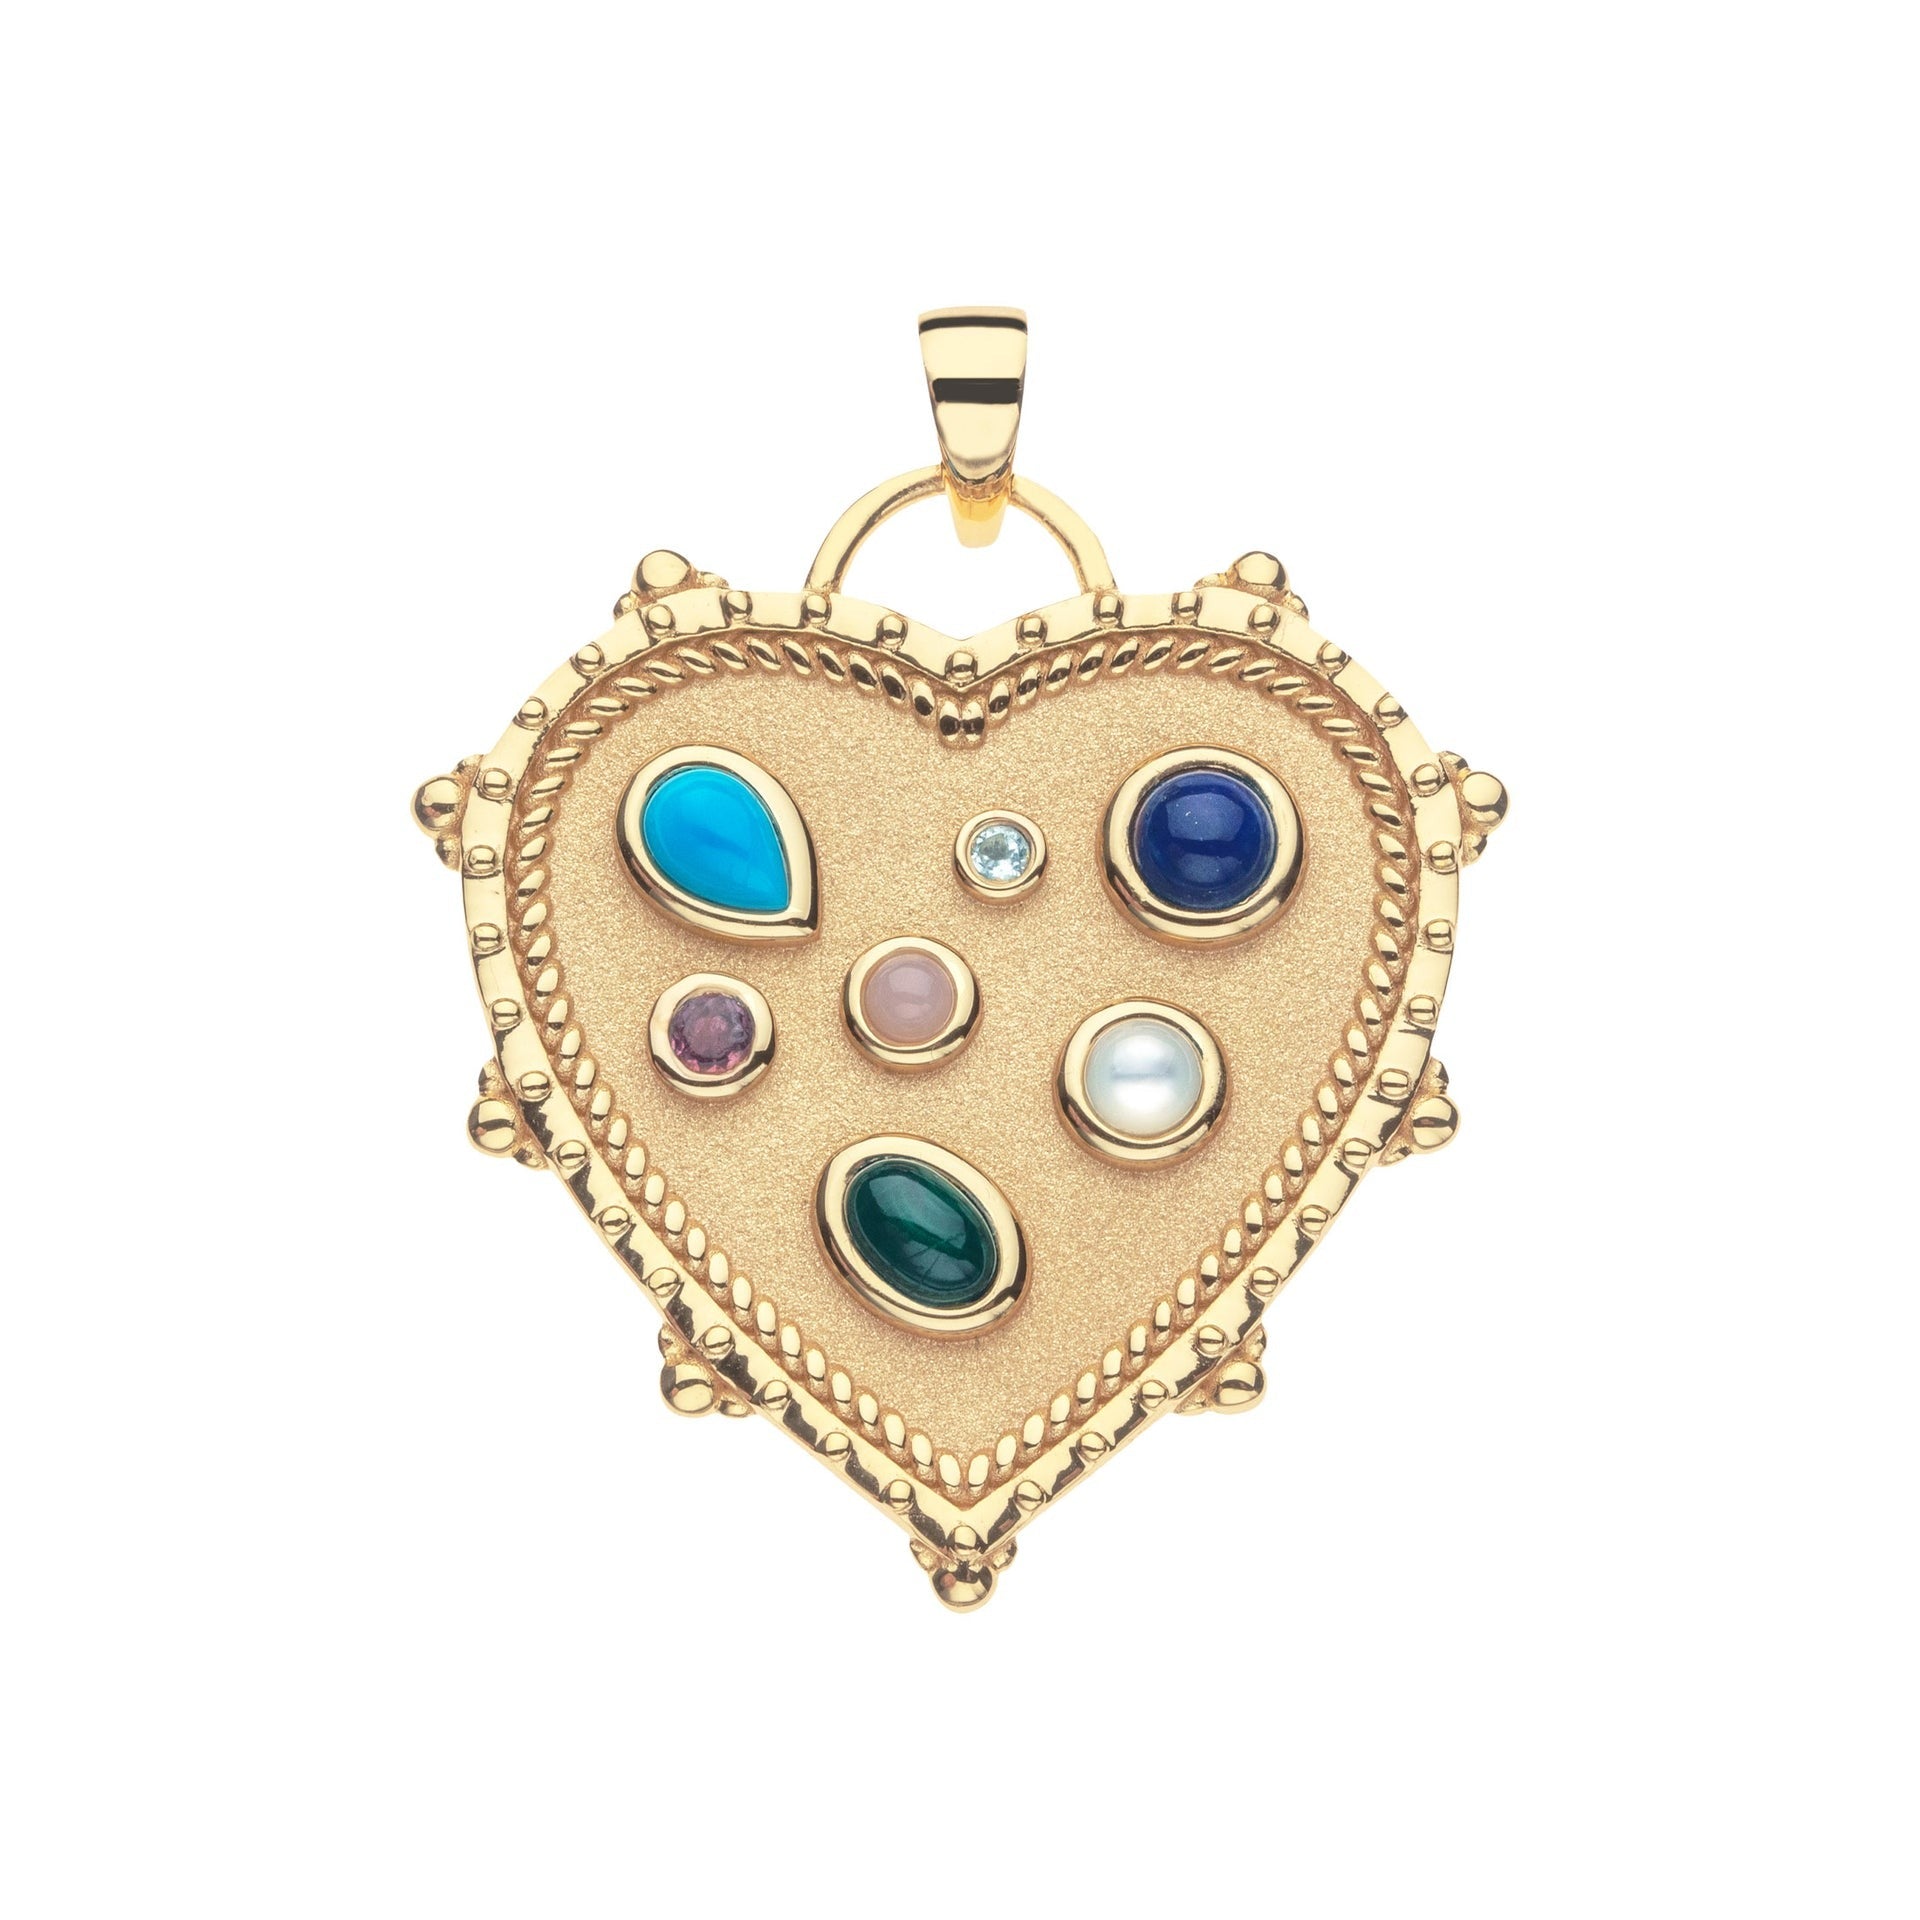 Jane Win LOVE Treasure Trove Heart Pendant Necklace